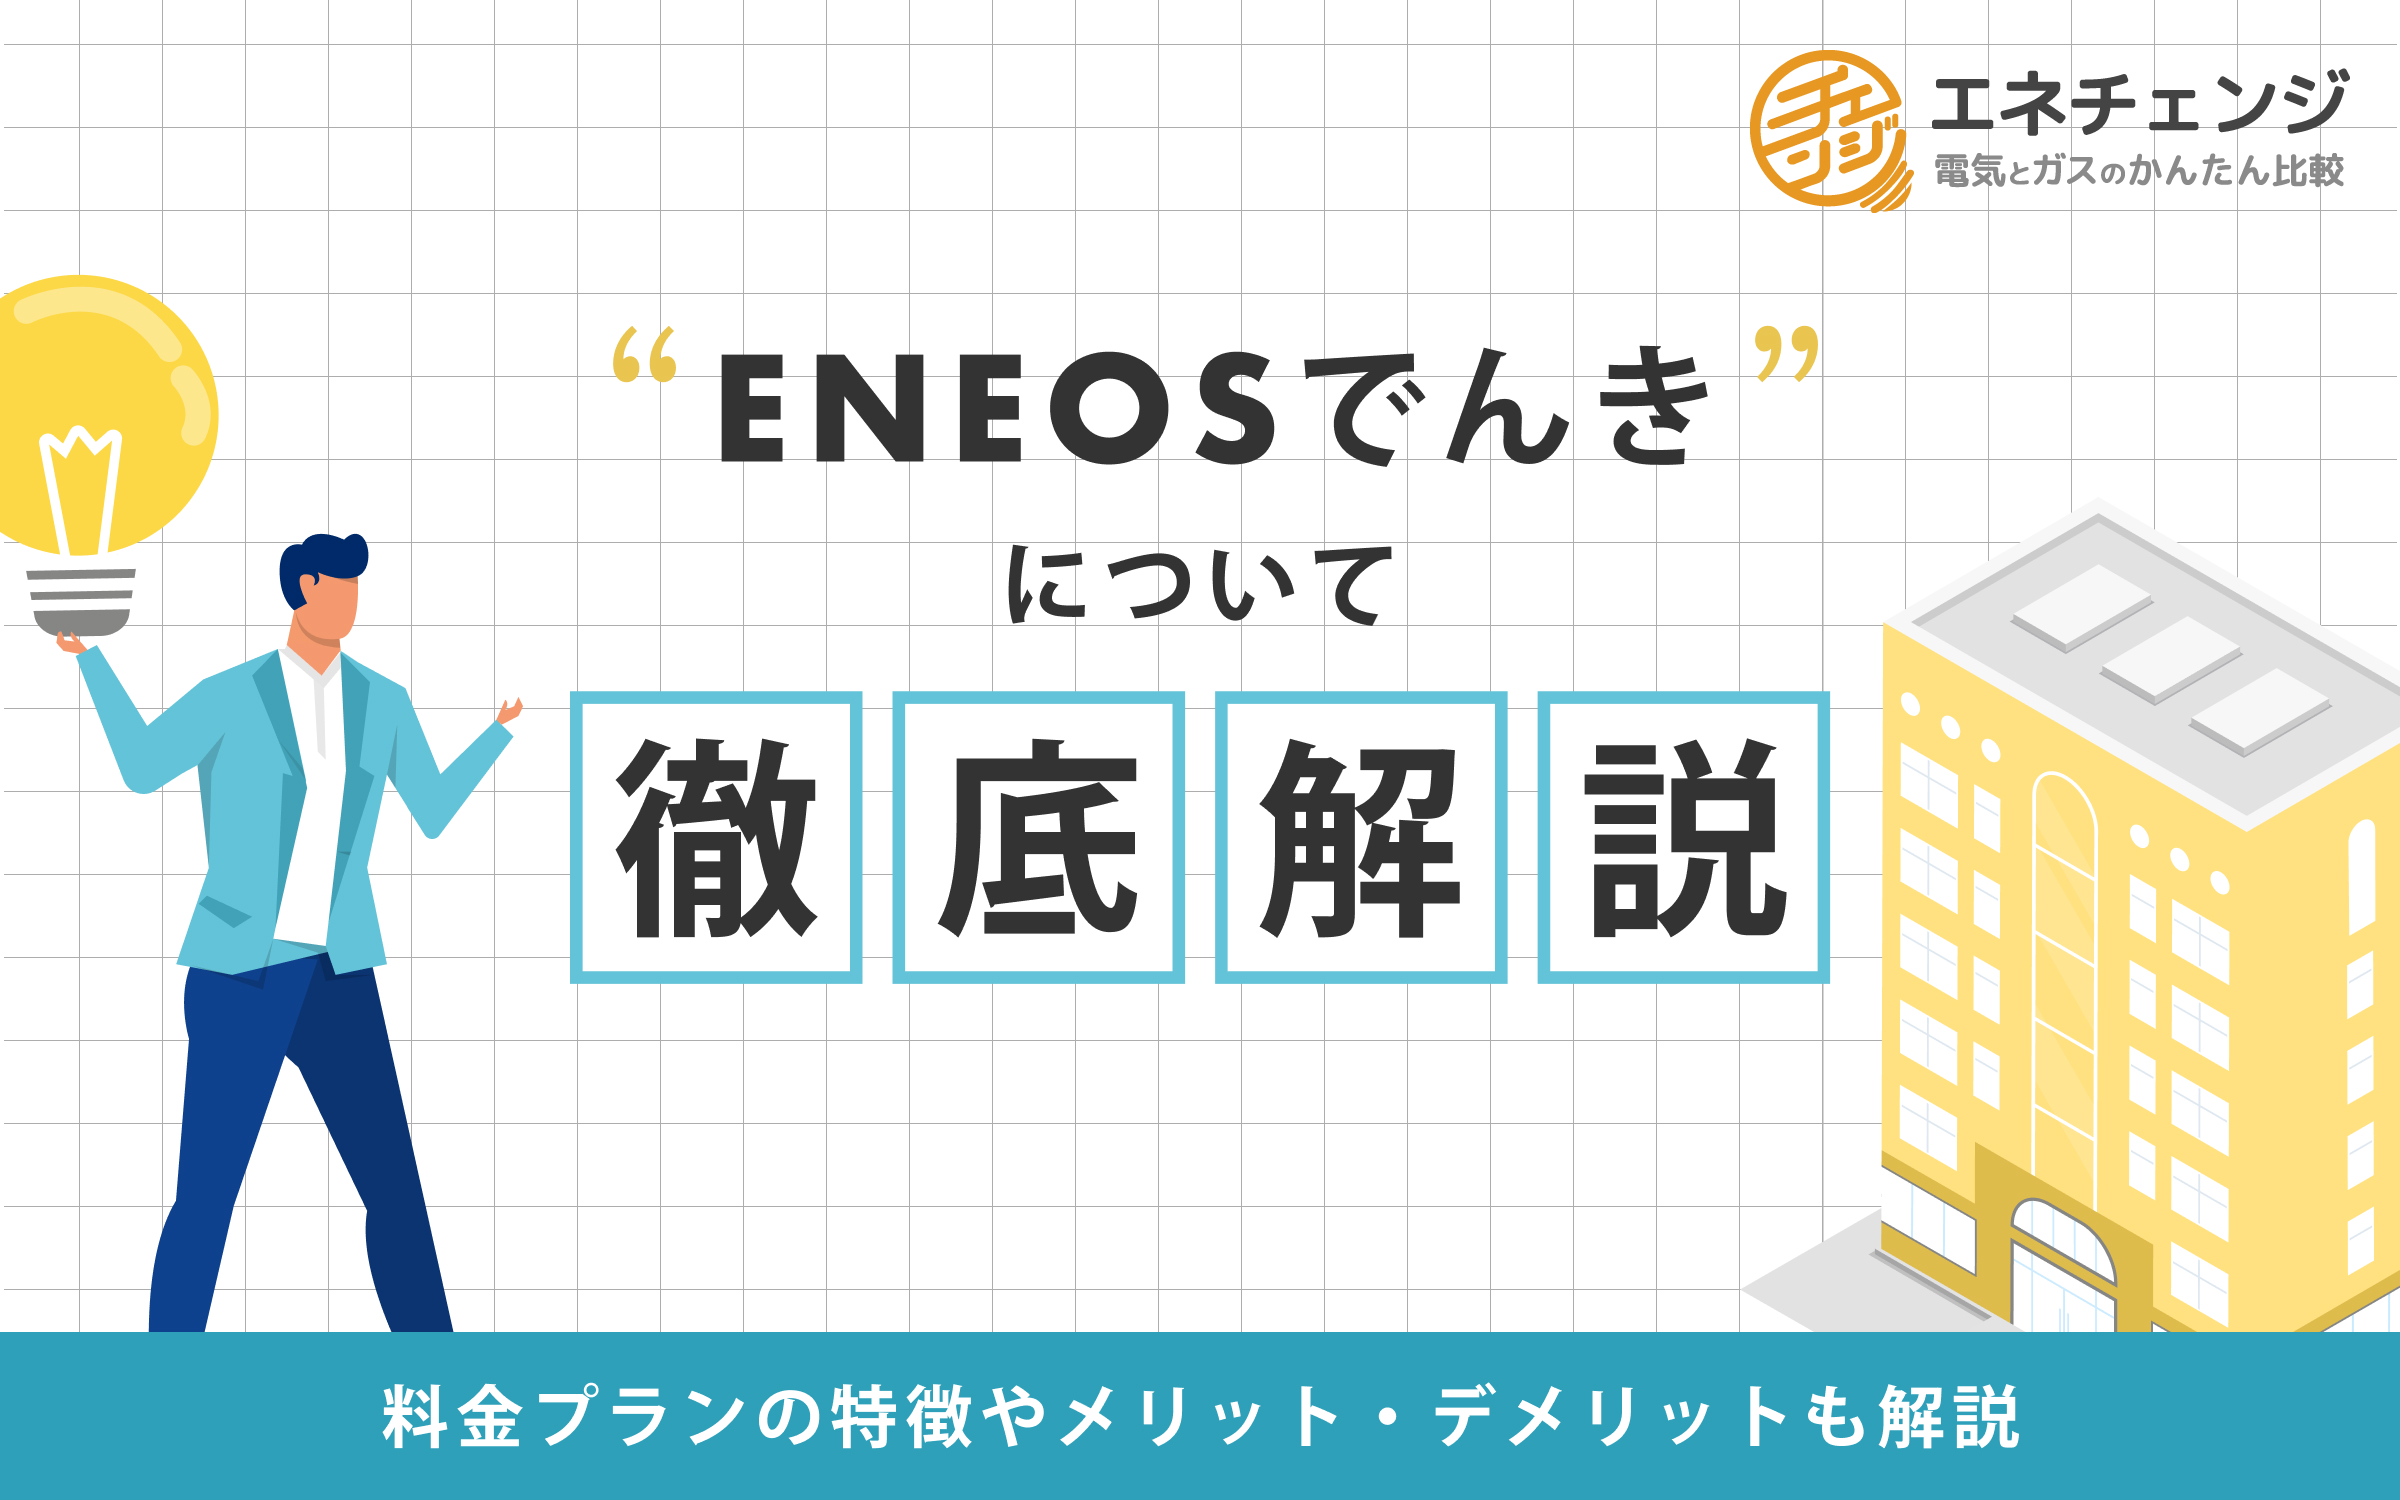 Eneosでんきの電気料金は高い 評判やメリットを紹介 電力 ガス比較サイト エネチェンジ